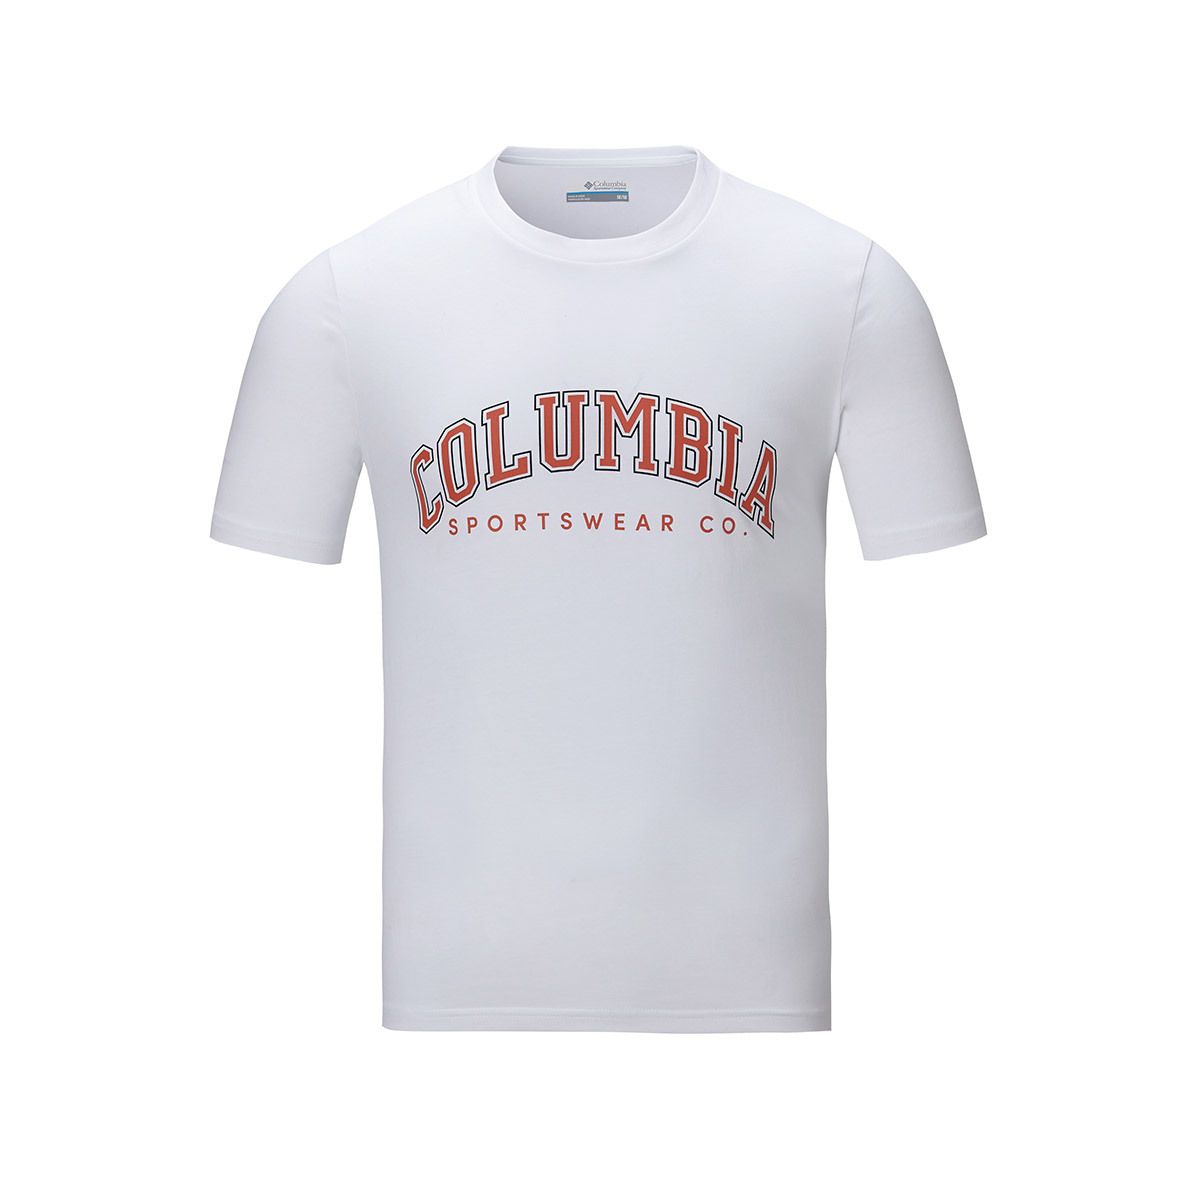 컬럼비아 남성 반소매 티셔츠 - 화이트, XL